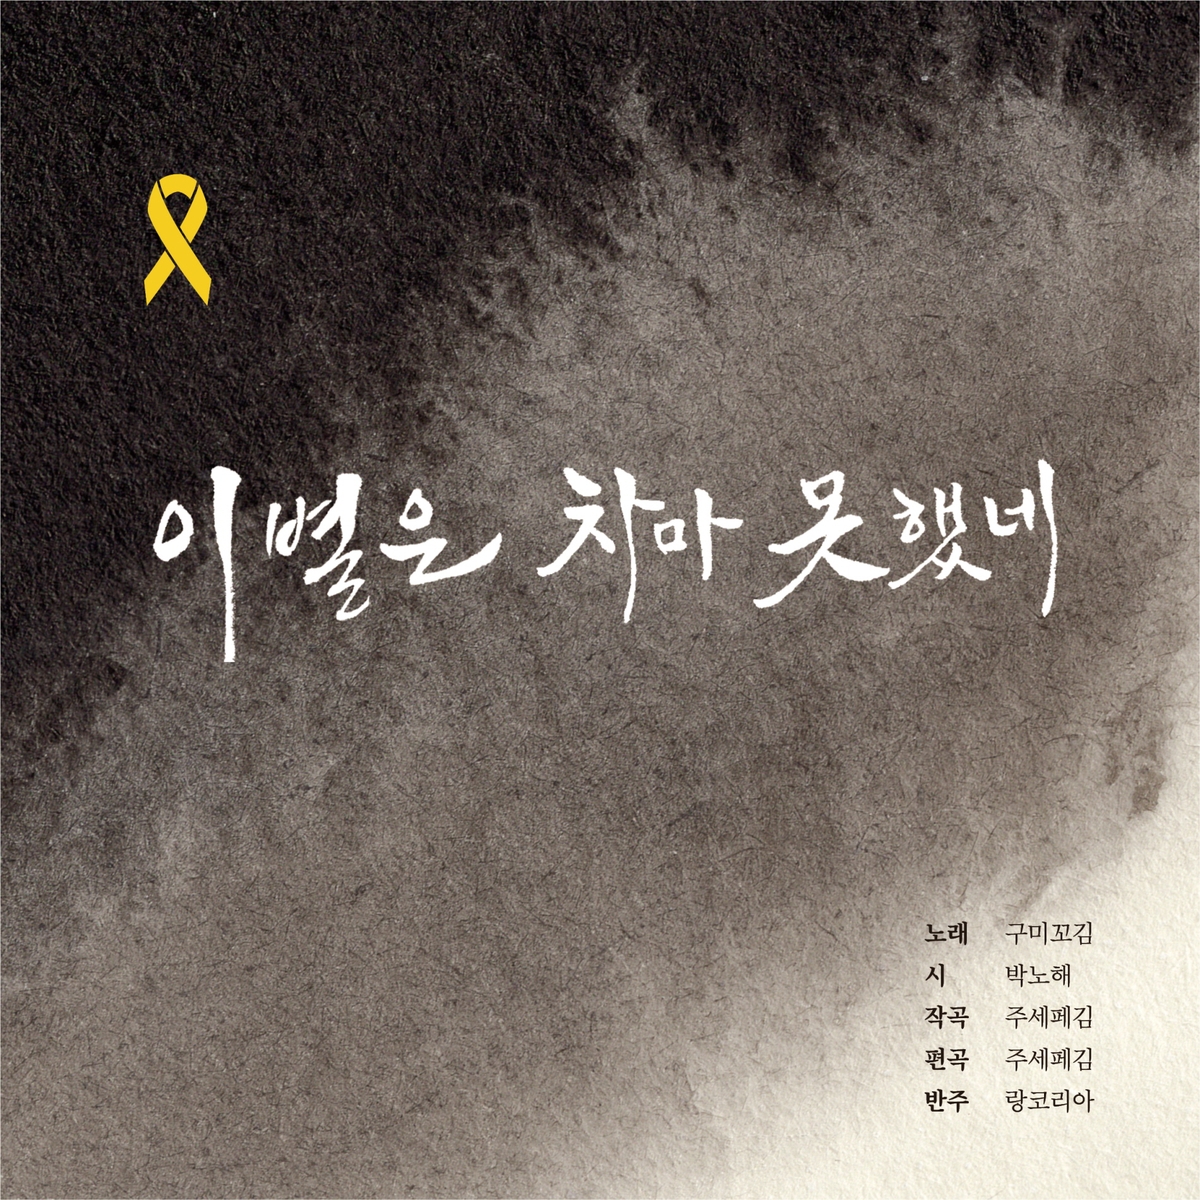 [가요소식] 폴킴, 배우 한지민과 듀엣곡 '한 정거장' 발표